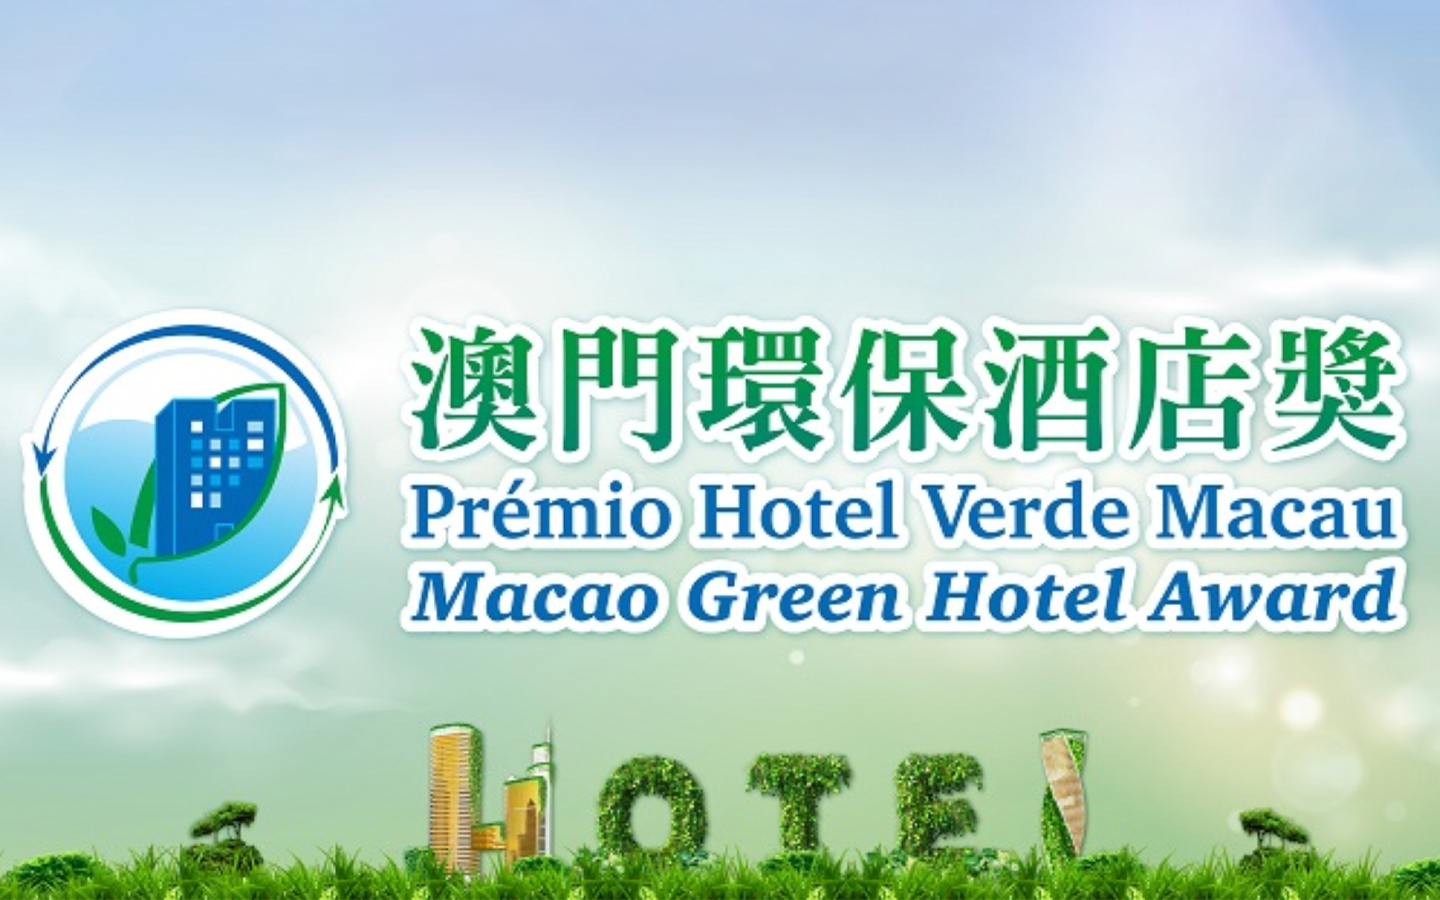 Macao hotels score green